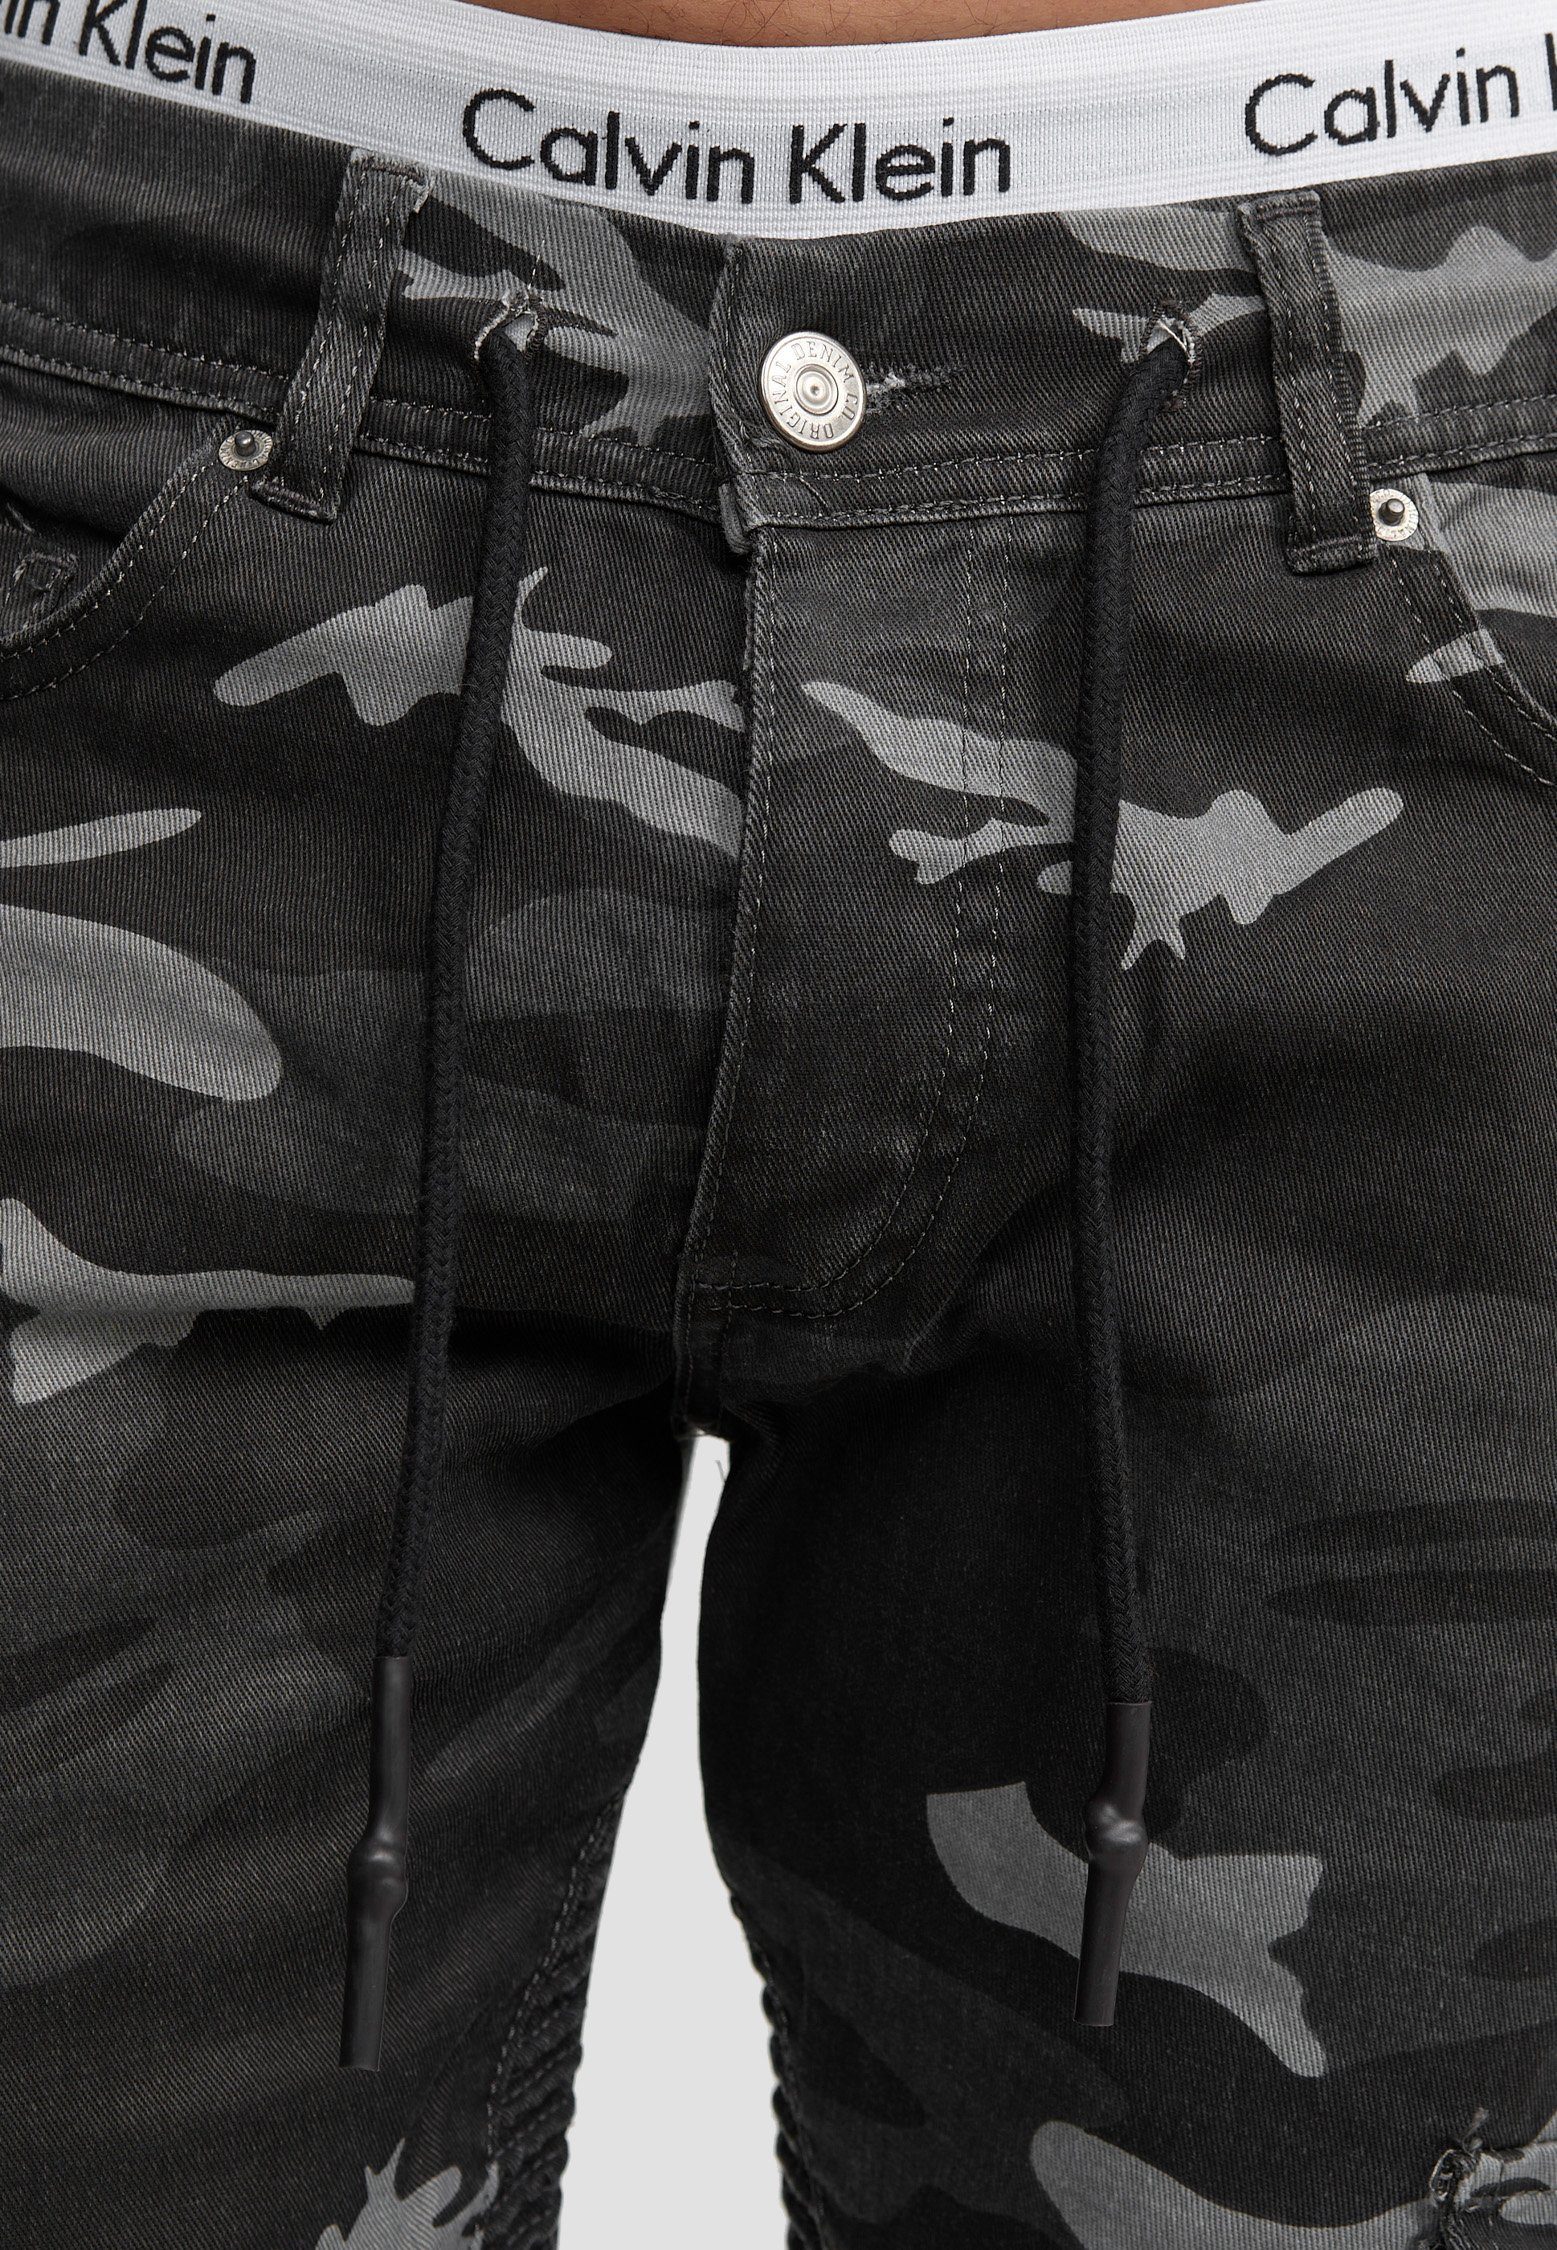 Schwarz 3207C Fit Herren Chino Slim-fit-Jeans Camouflage Jeans Hose Slim Code47 Männer Designer Chinohose Slim